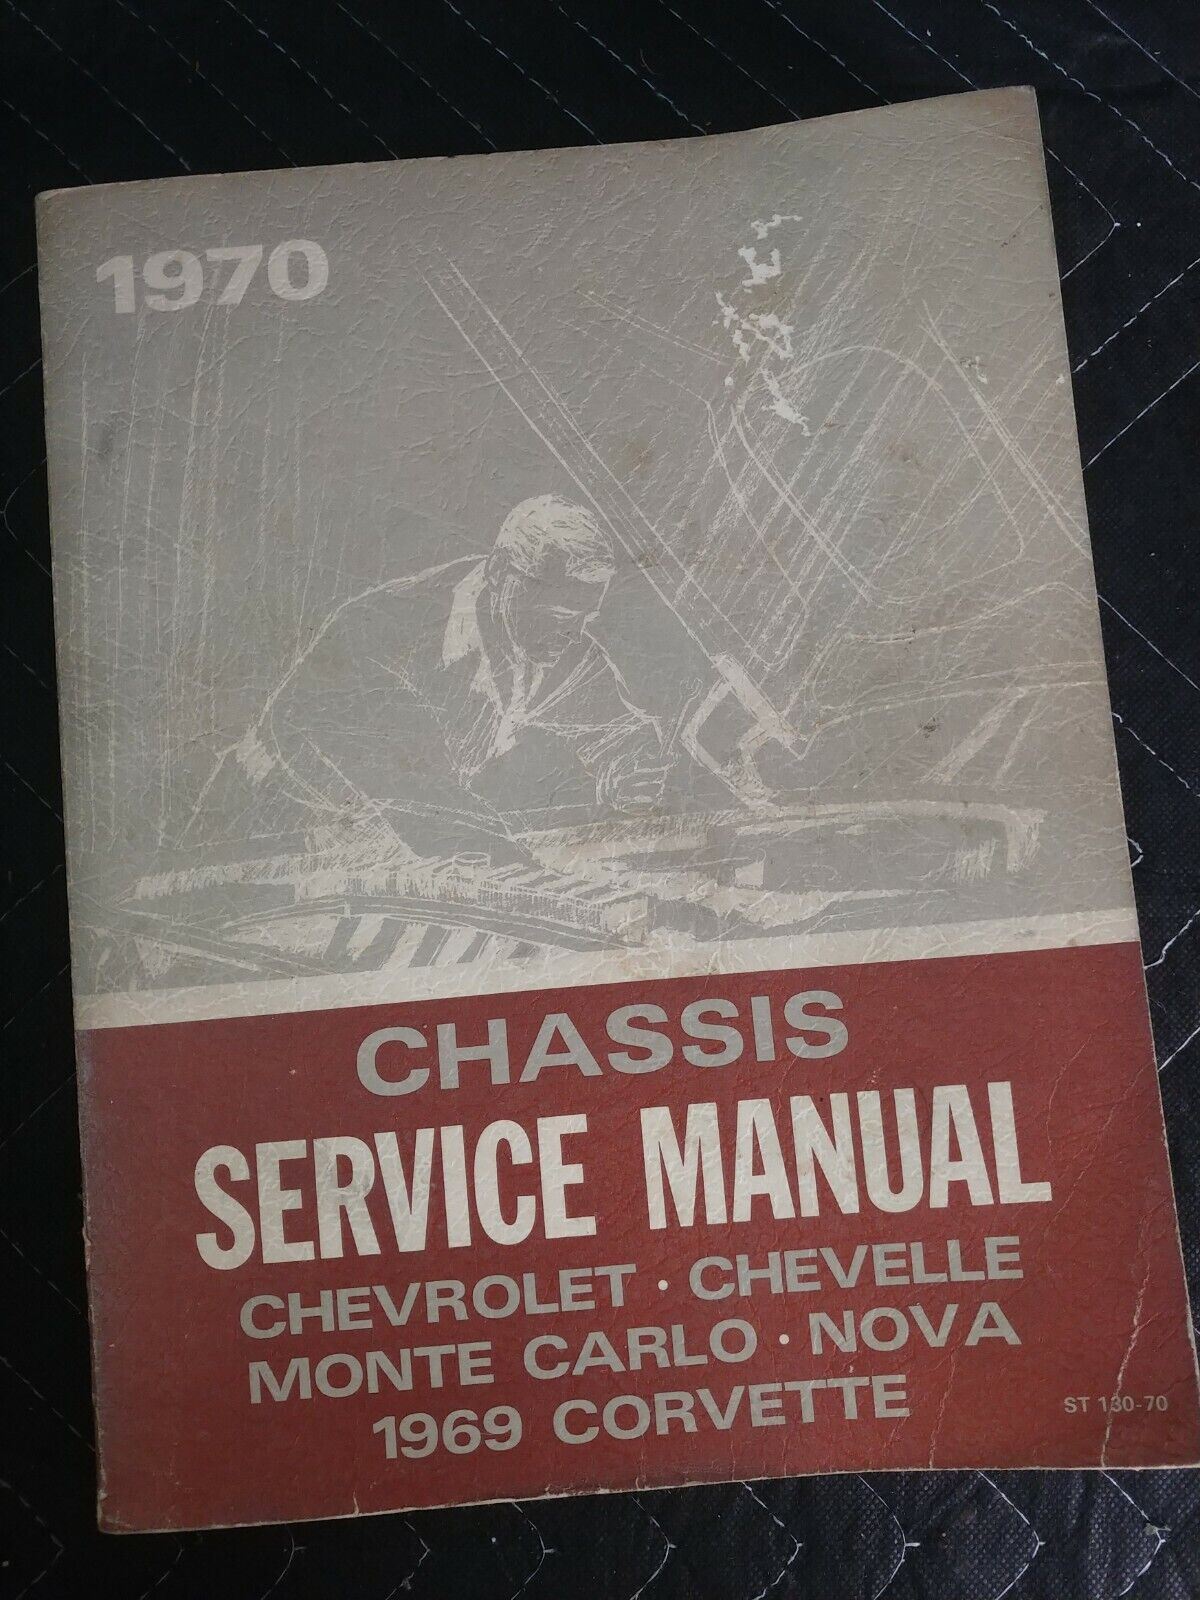 1970 Chevrolet Chassis Service Manual Chevelle Nova  Monte Carlo Corvette Chevy